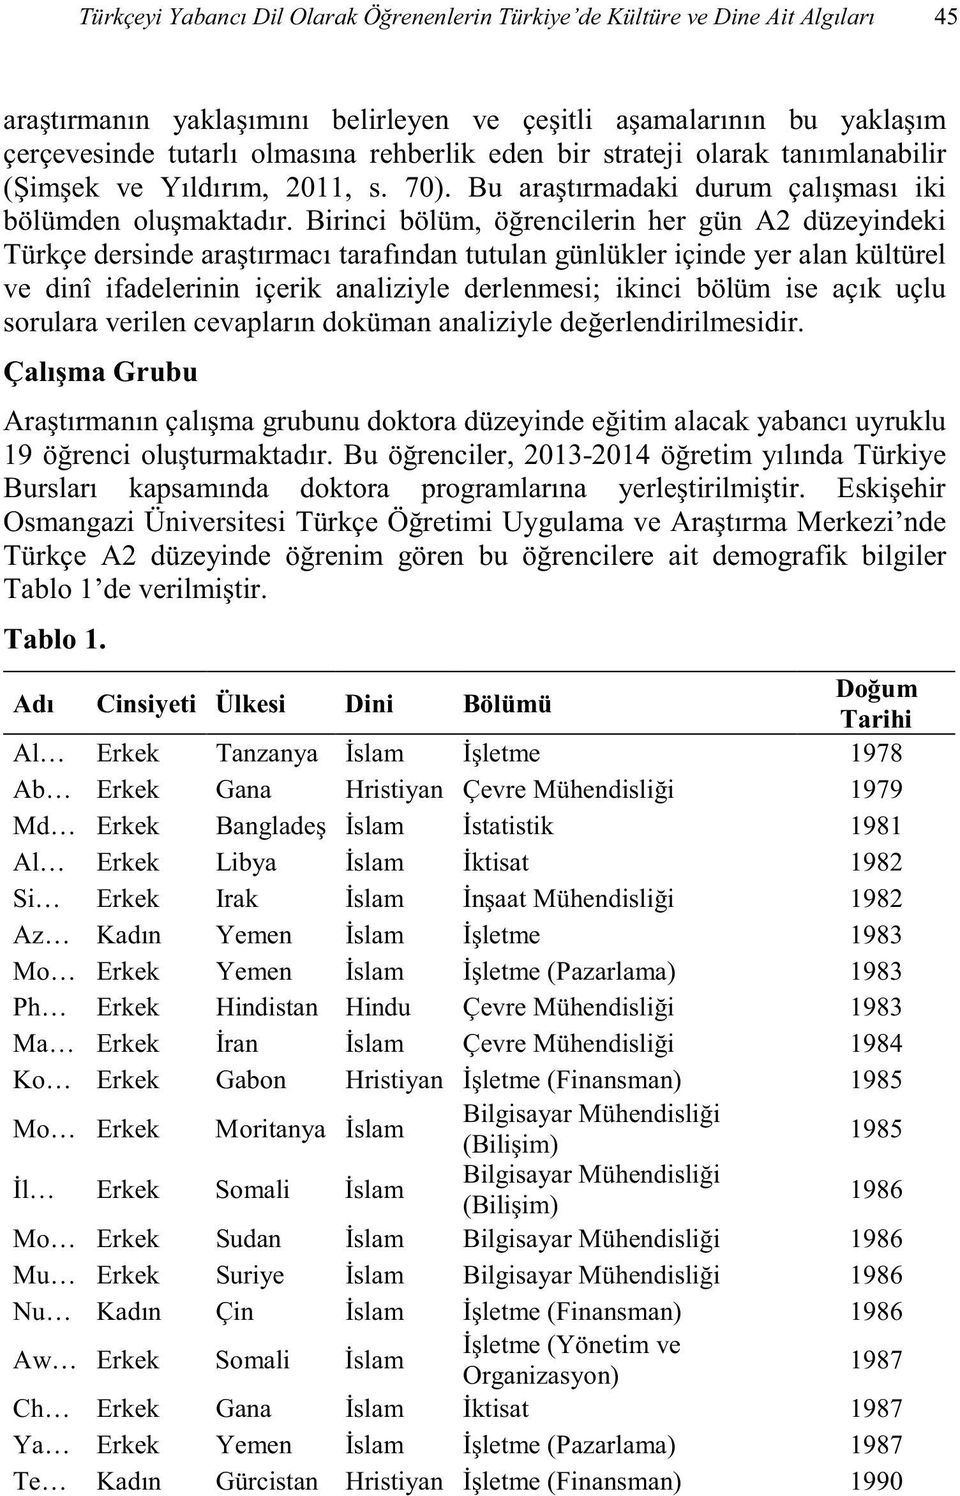 tim alacak 19 renciler, 2013-2014 doktora p Osmangazi Üniversitesi de Türkçe A2 düzeyinde ait demografik bilgiler Tablo 1 Tablo 1.